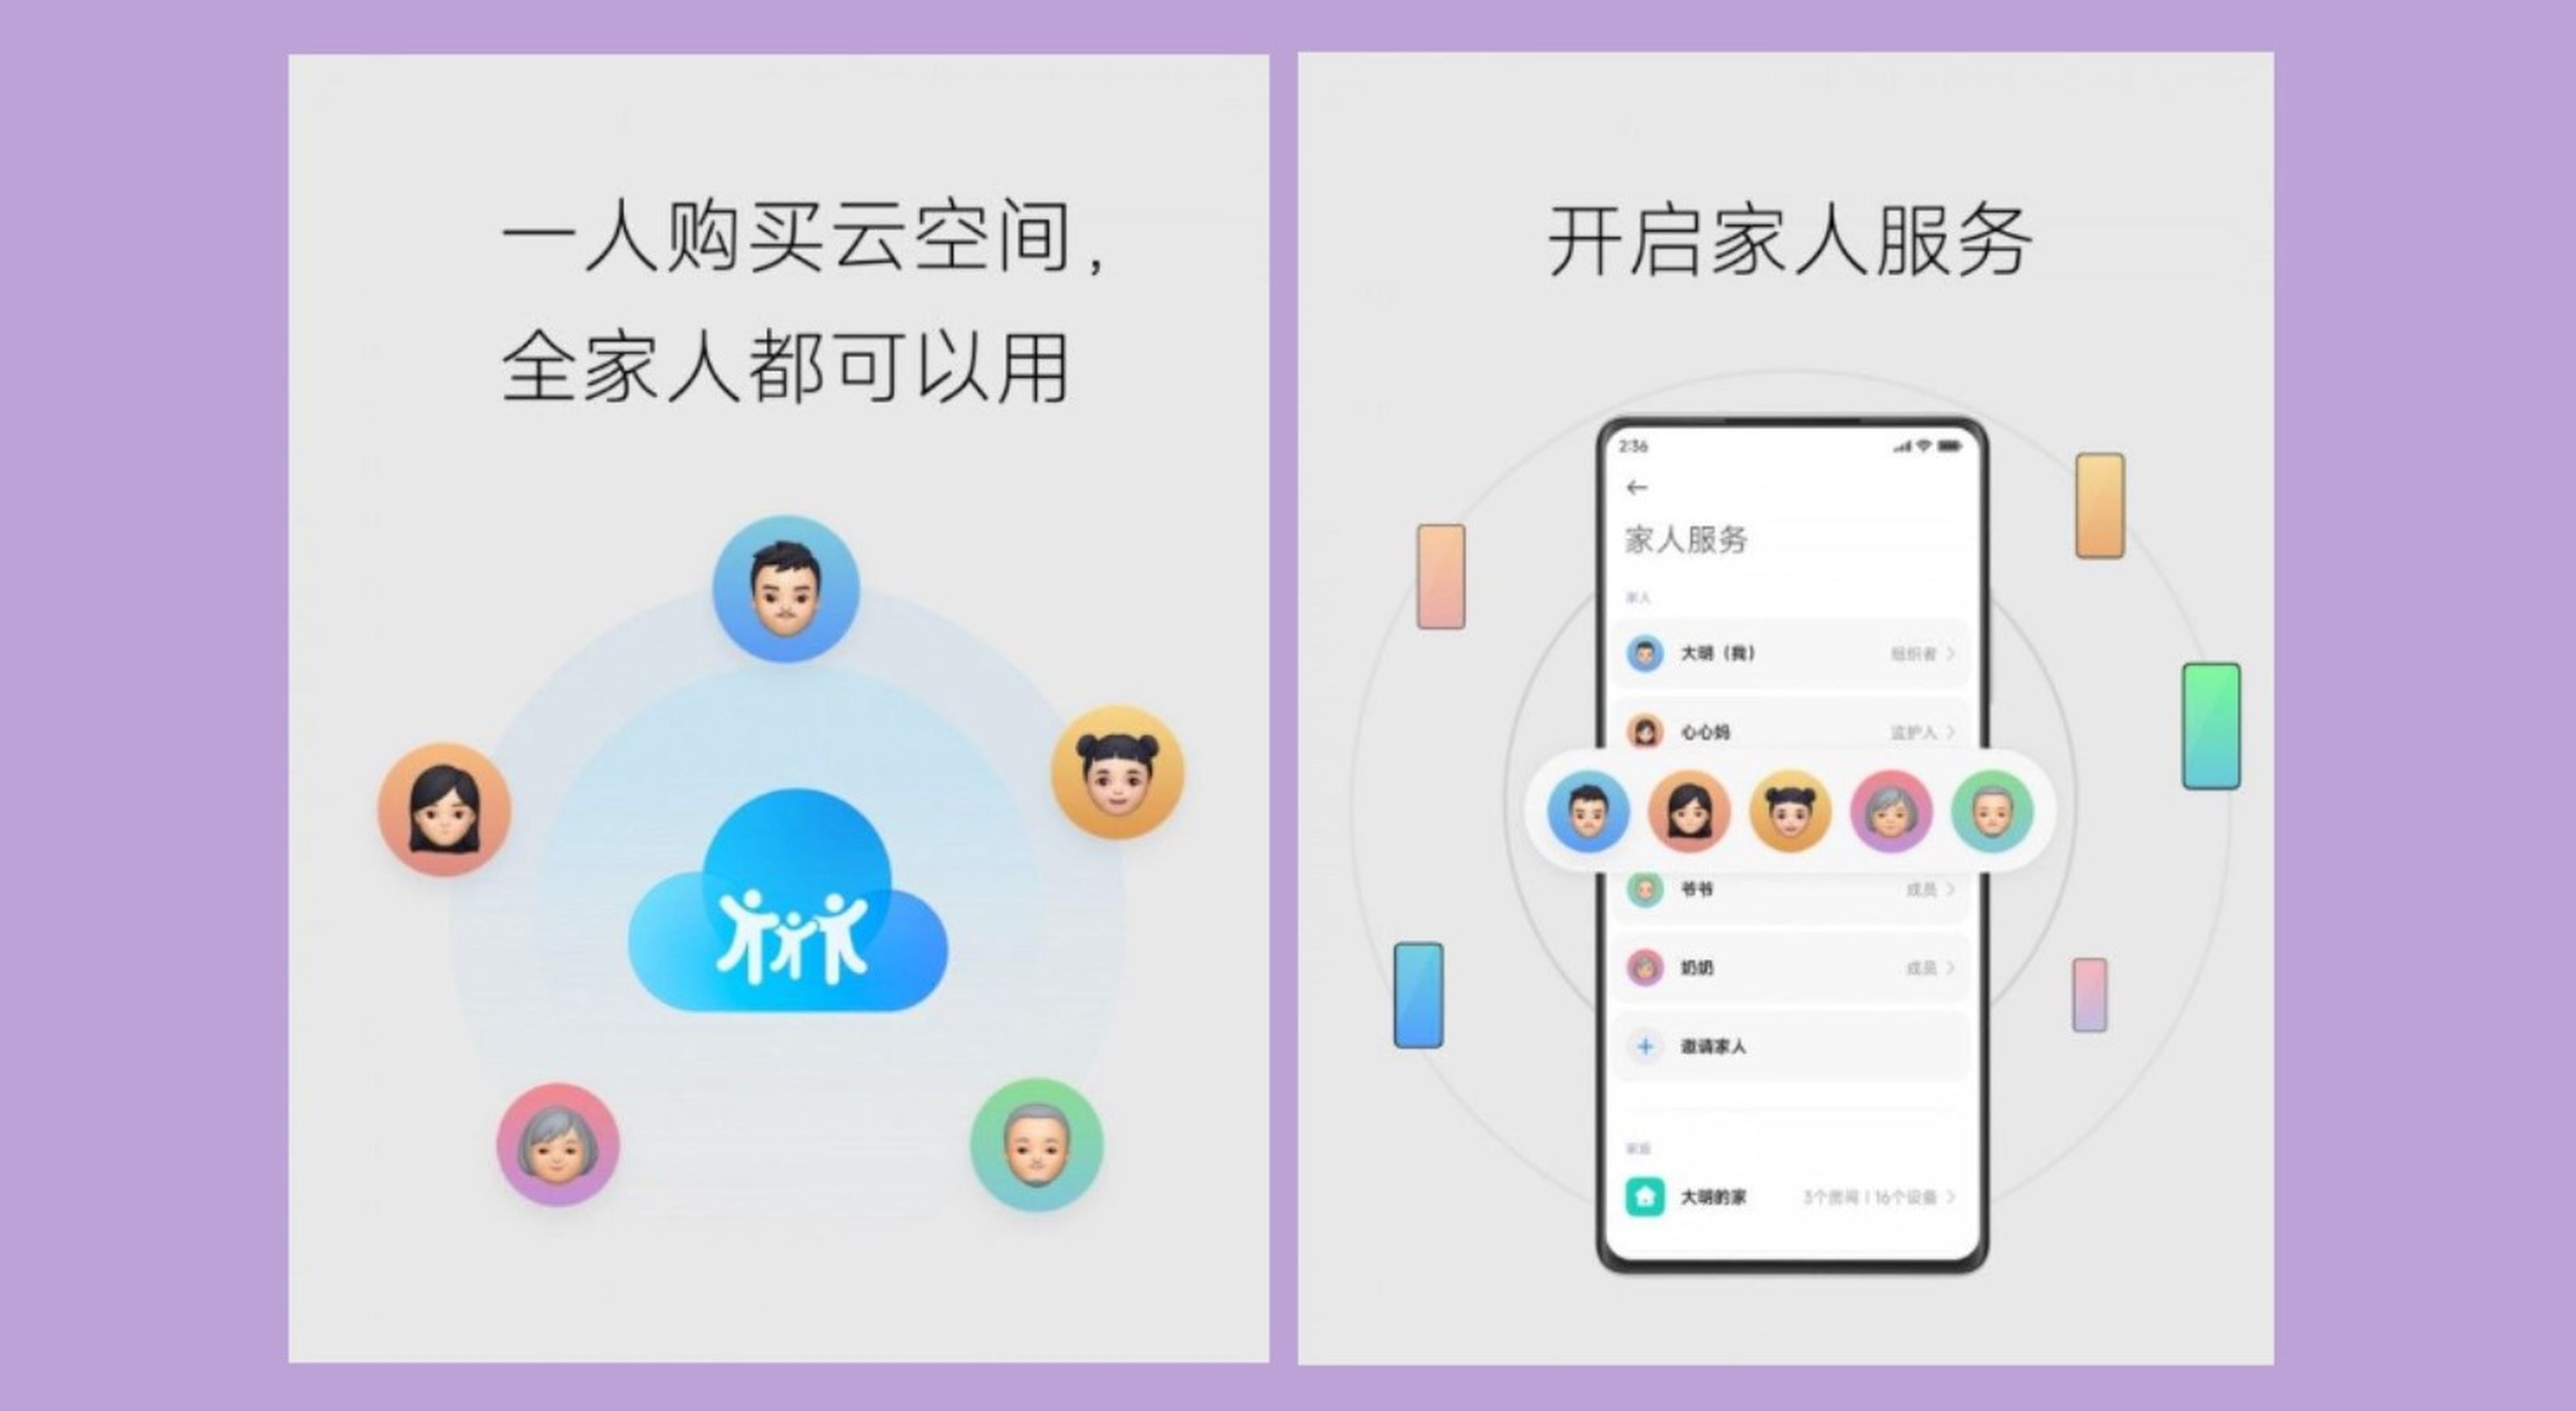 Xiaomi MIUI 14 ya es oficial: estas son todas las mejoras y novedades que presenta